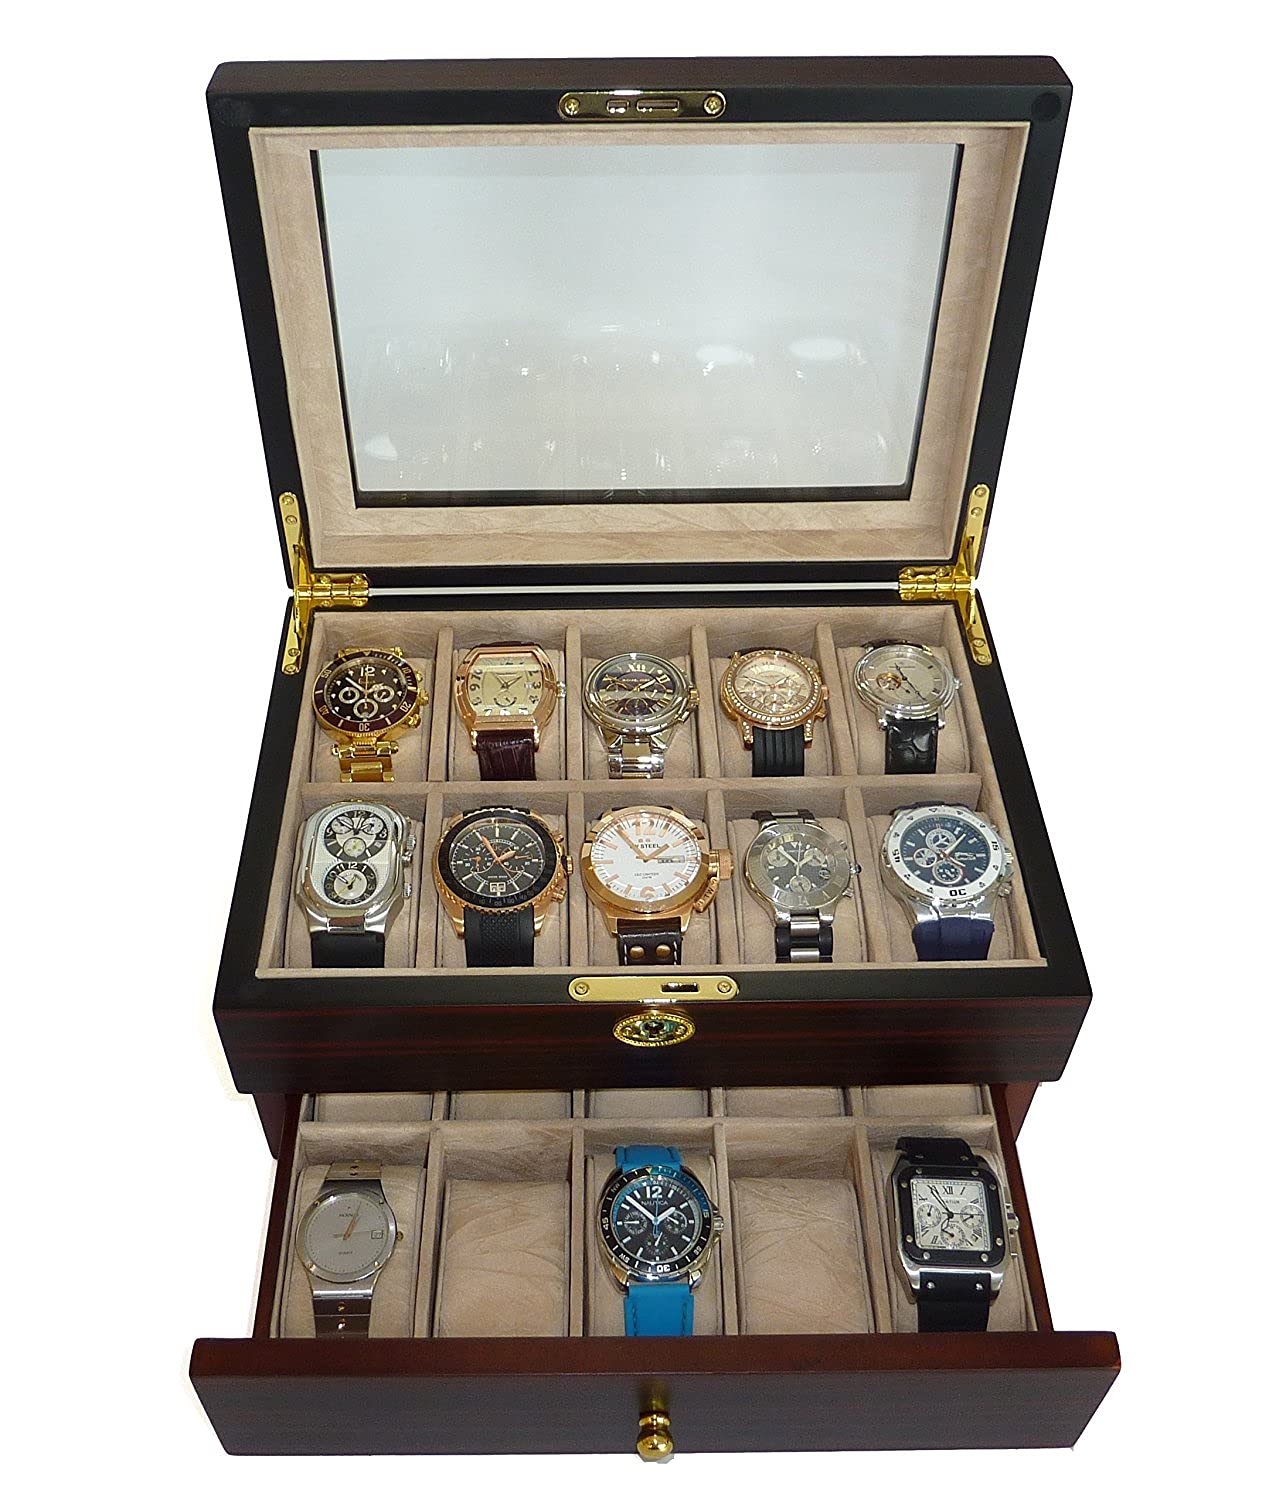 TIMELYBUYS Personalized 20 Piece Ebony Walnut Wood Watch Display Case and Storage Organizer Jewelry Box